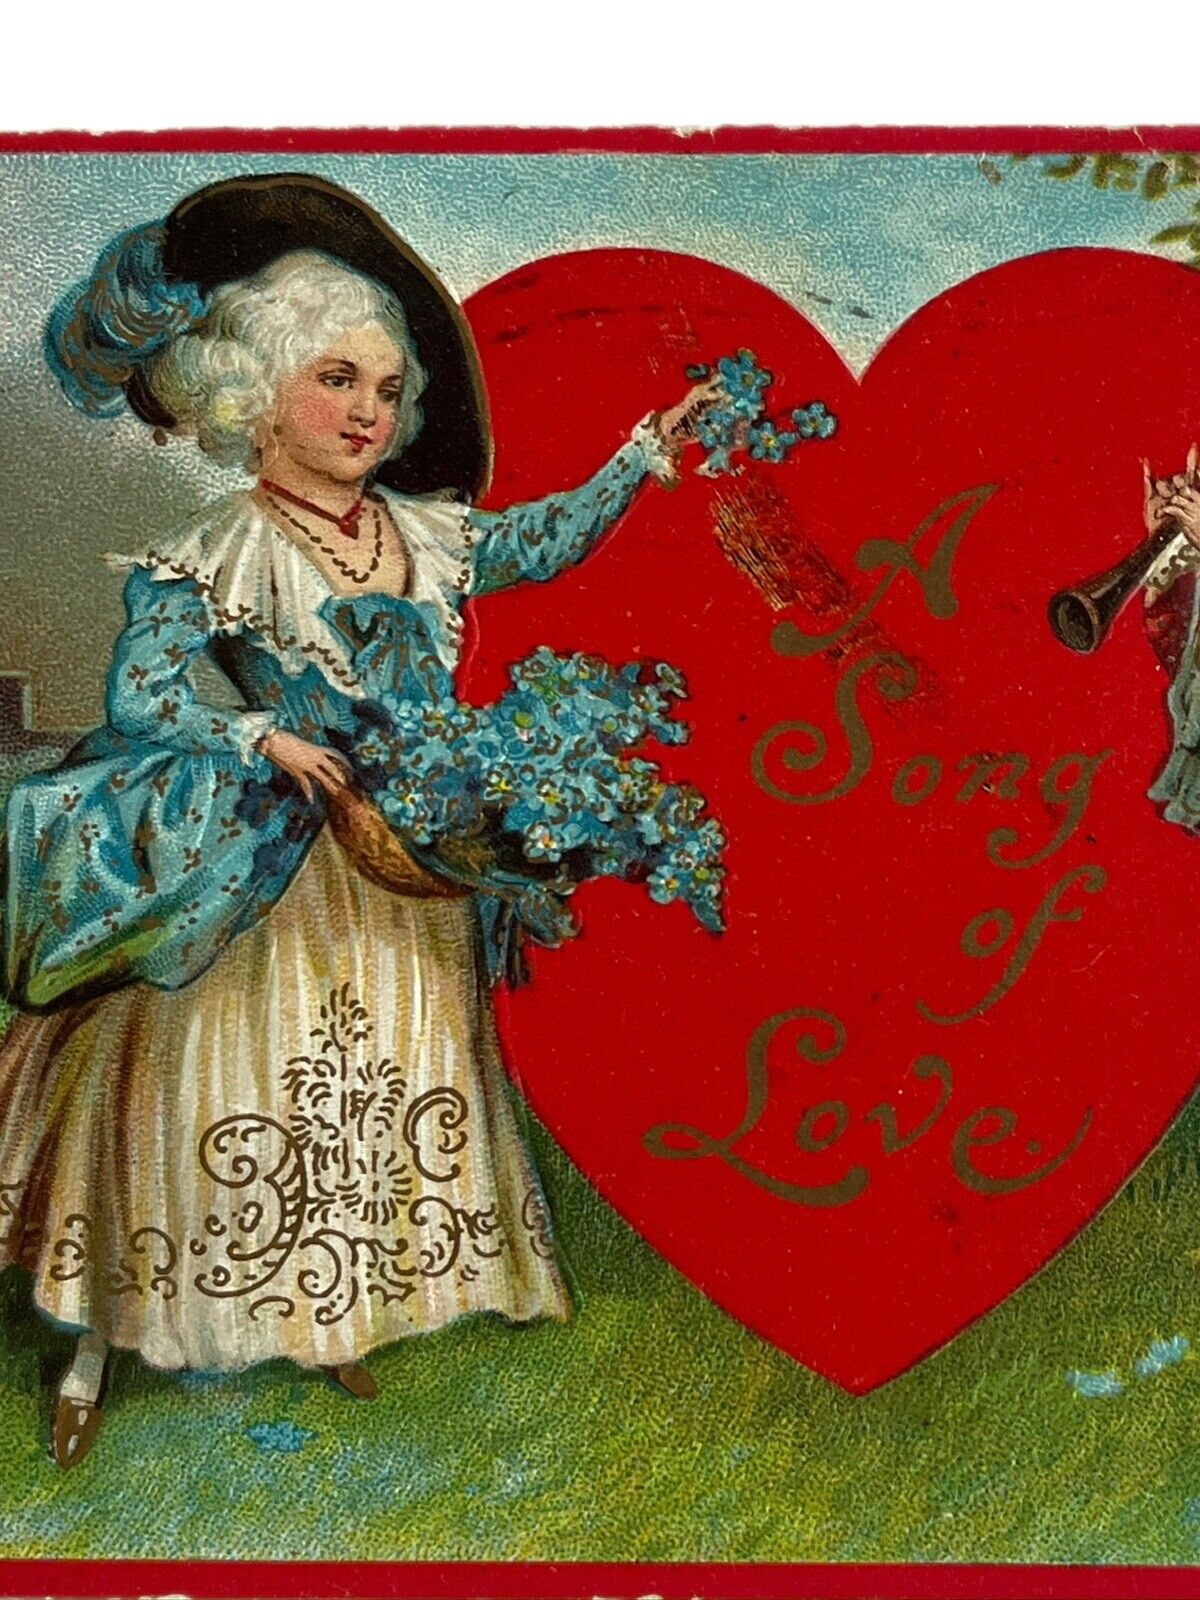 Antique 1912 Ephemera Valentine Postcard Edwardian Era Victorian Style Serenades